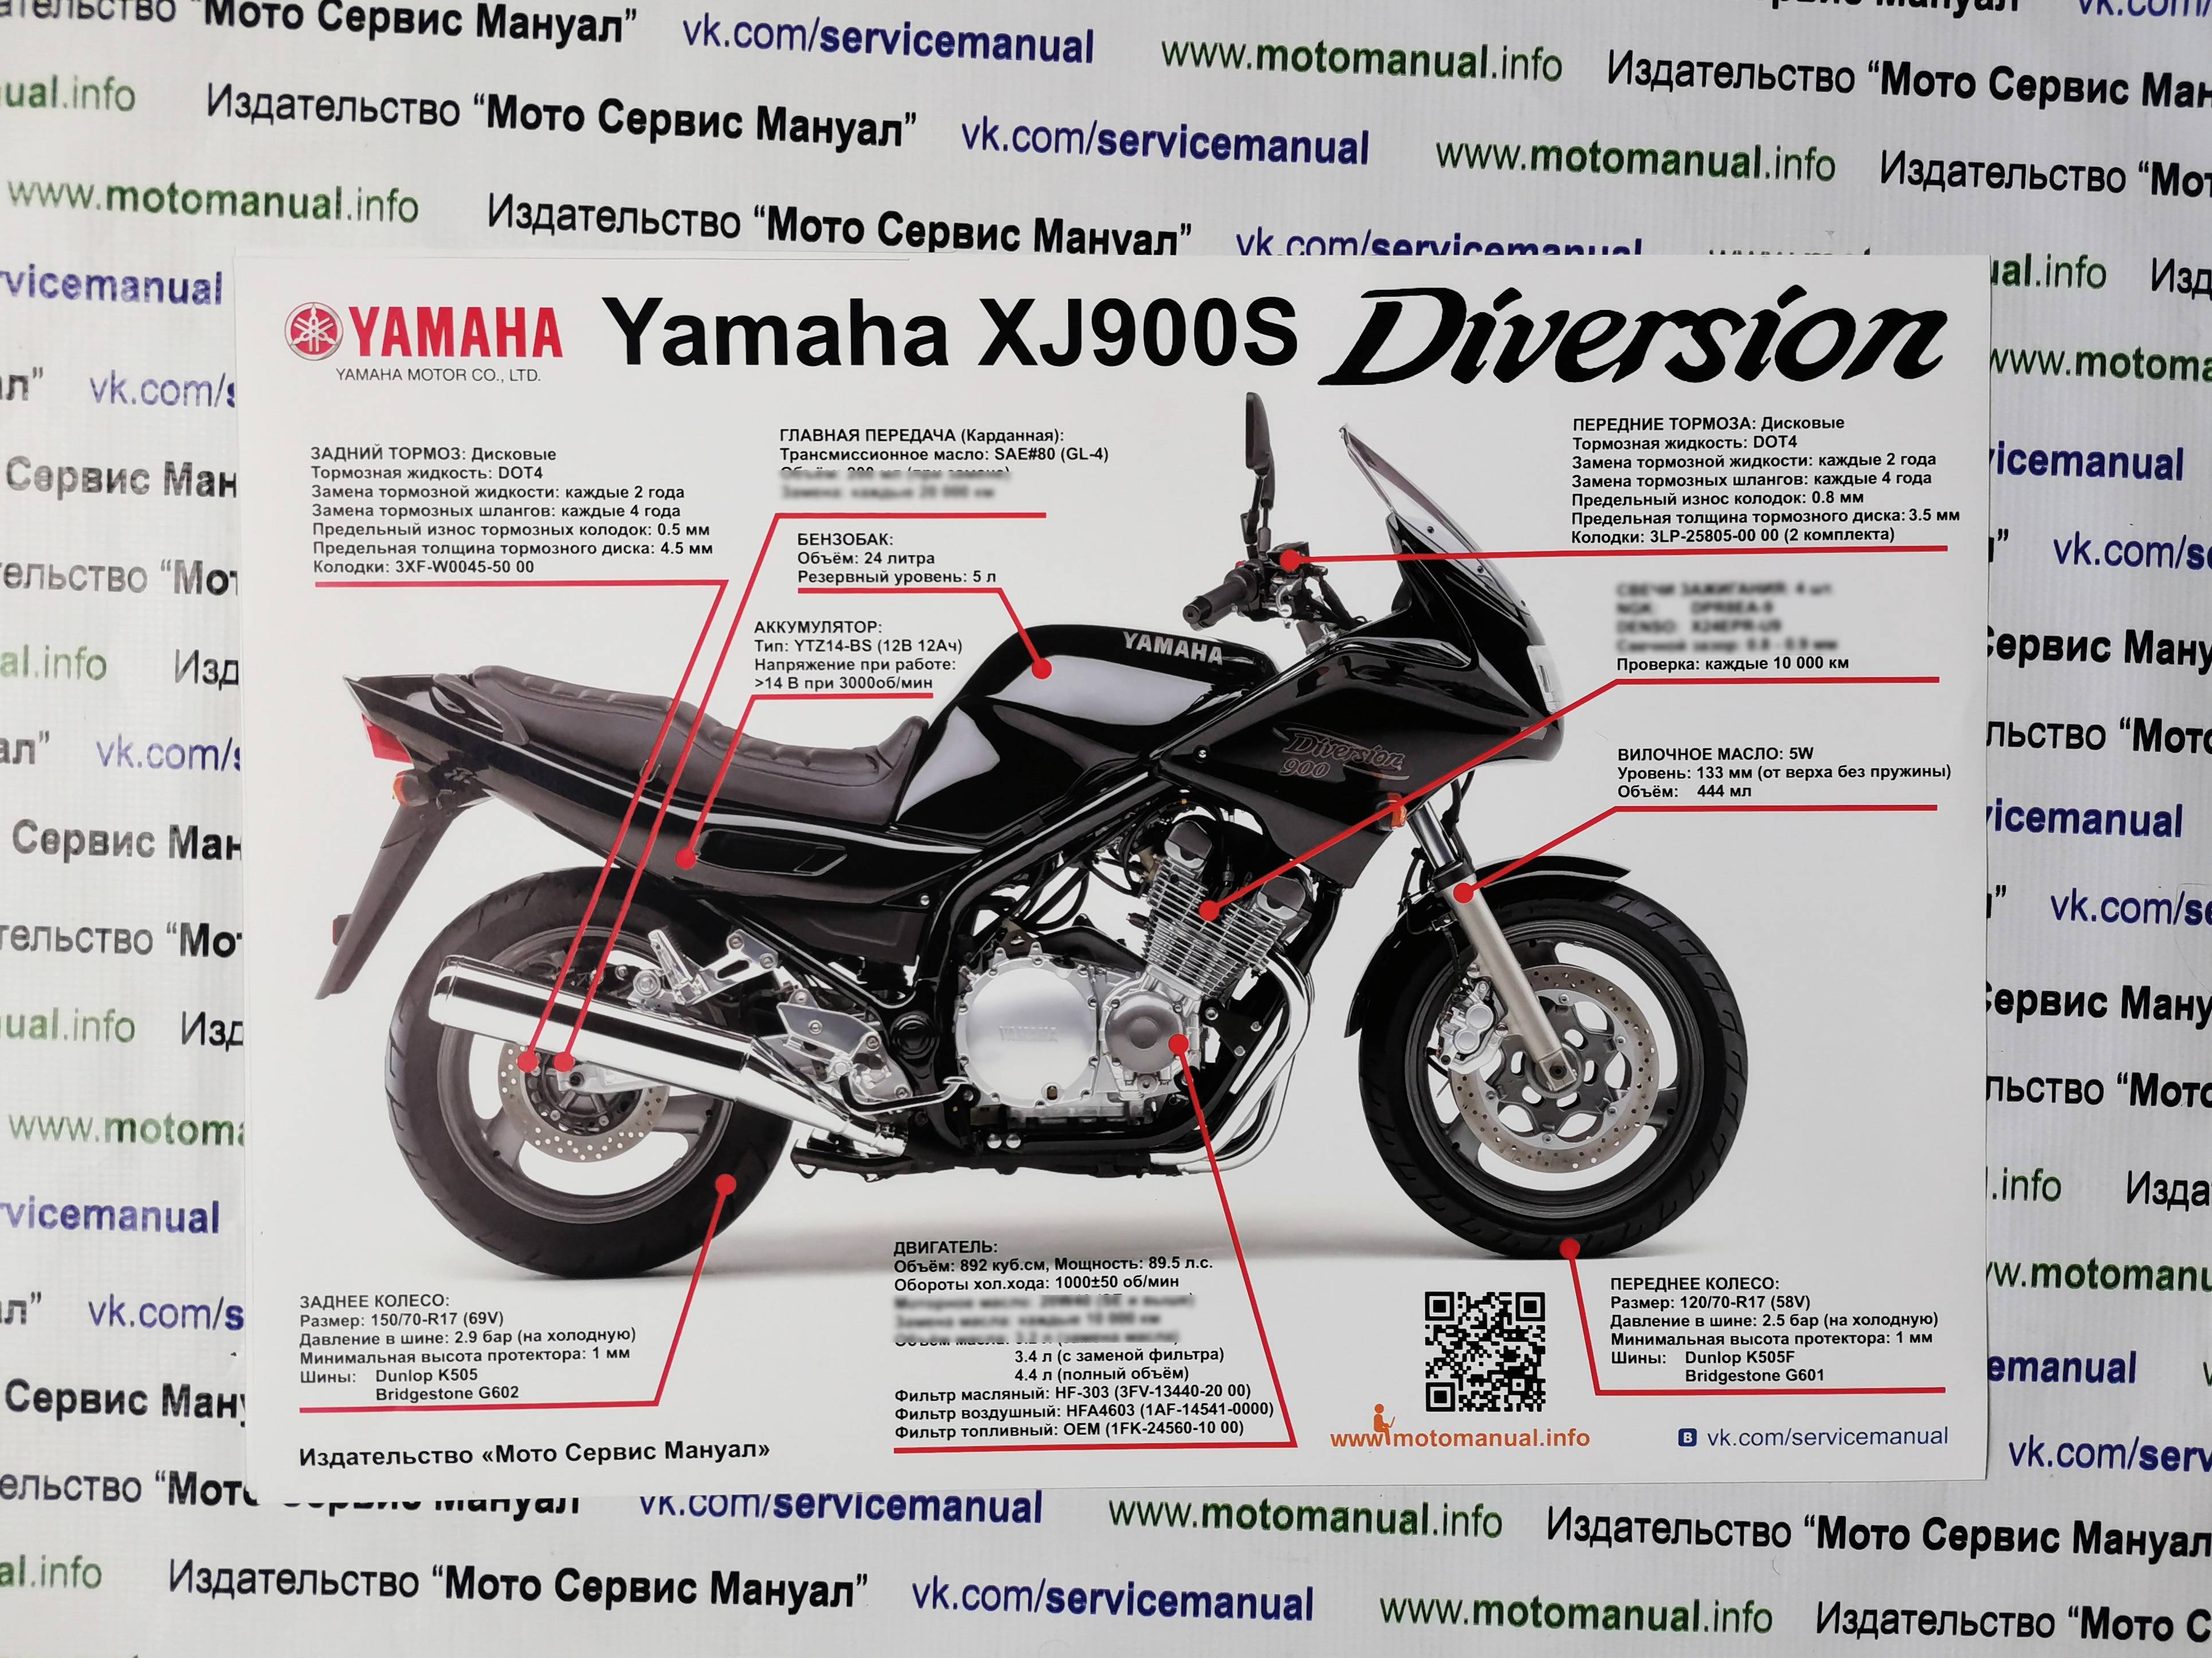 Yamaha xj 6 diversion: service and repair manuals